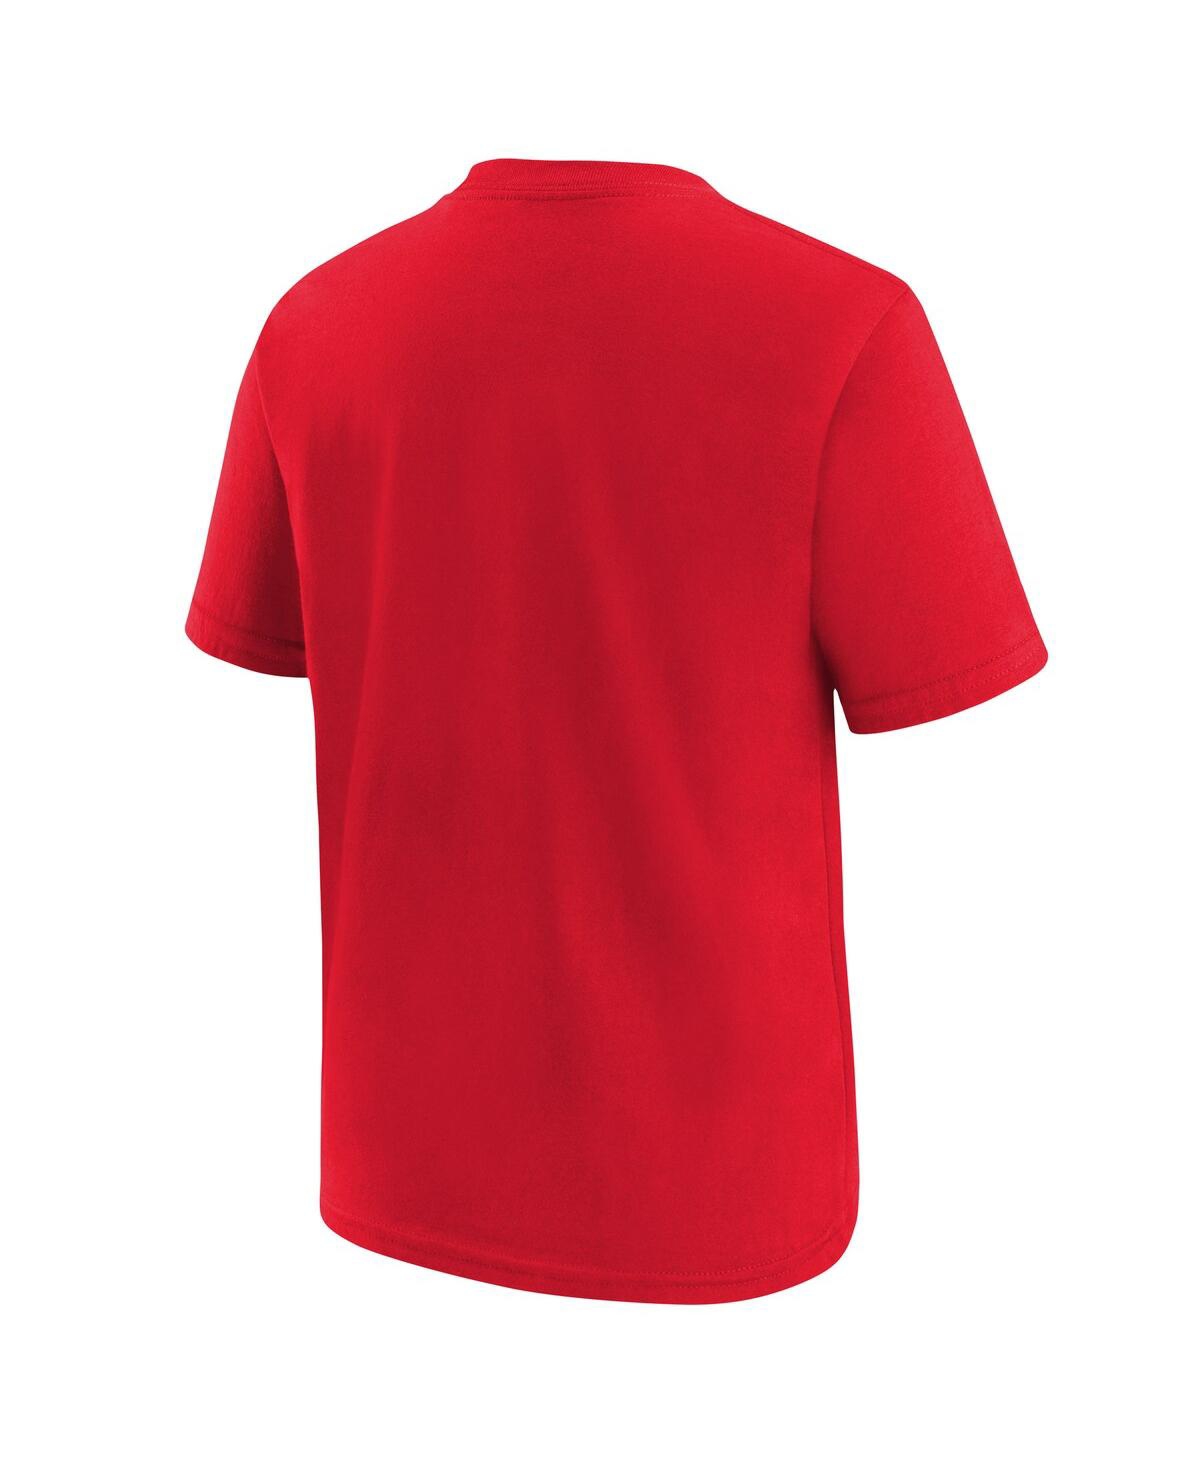 Shop Nike Big Boys  Red Kansas City Chiefs Super Bowl Lviii Champions Local Fashion T-shirt